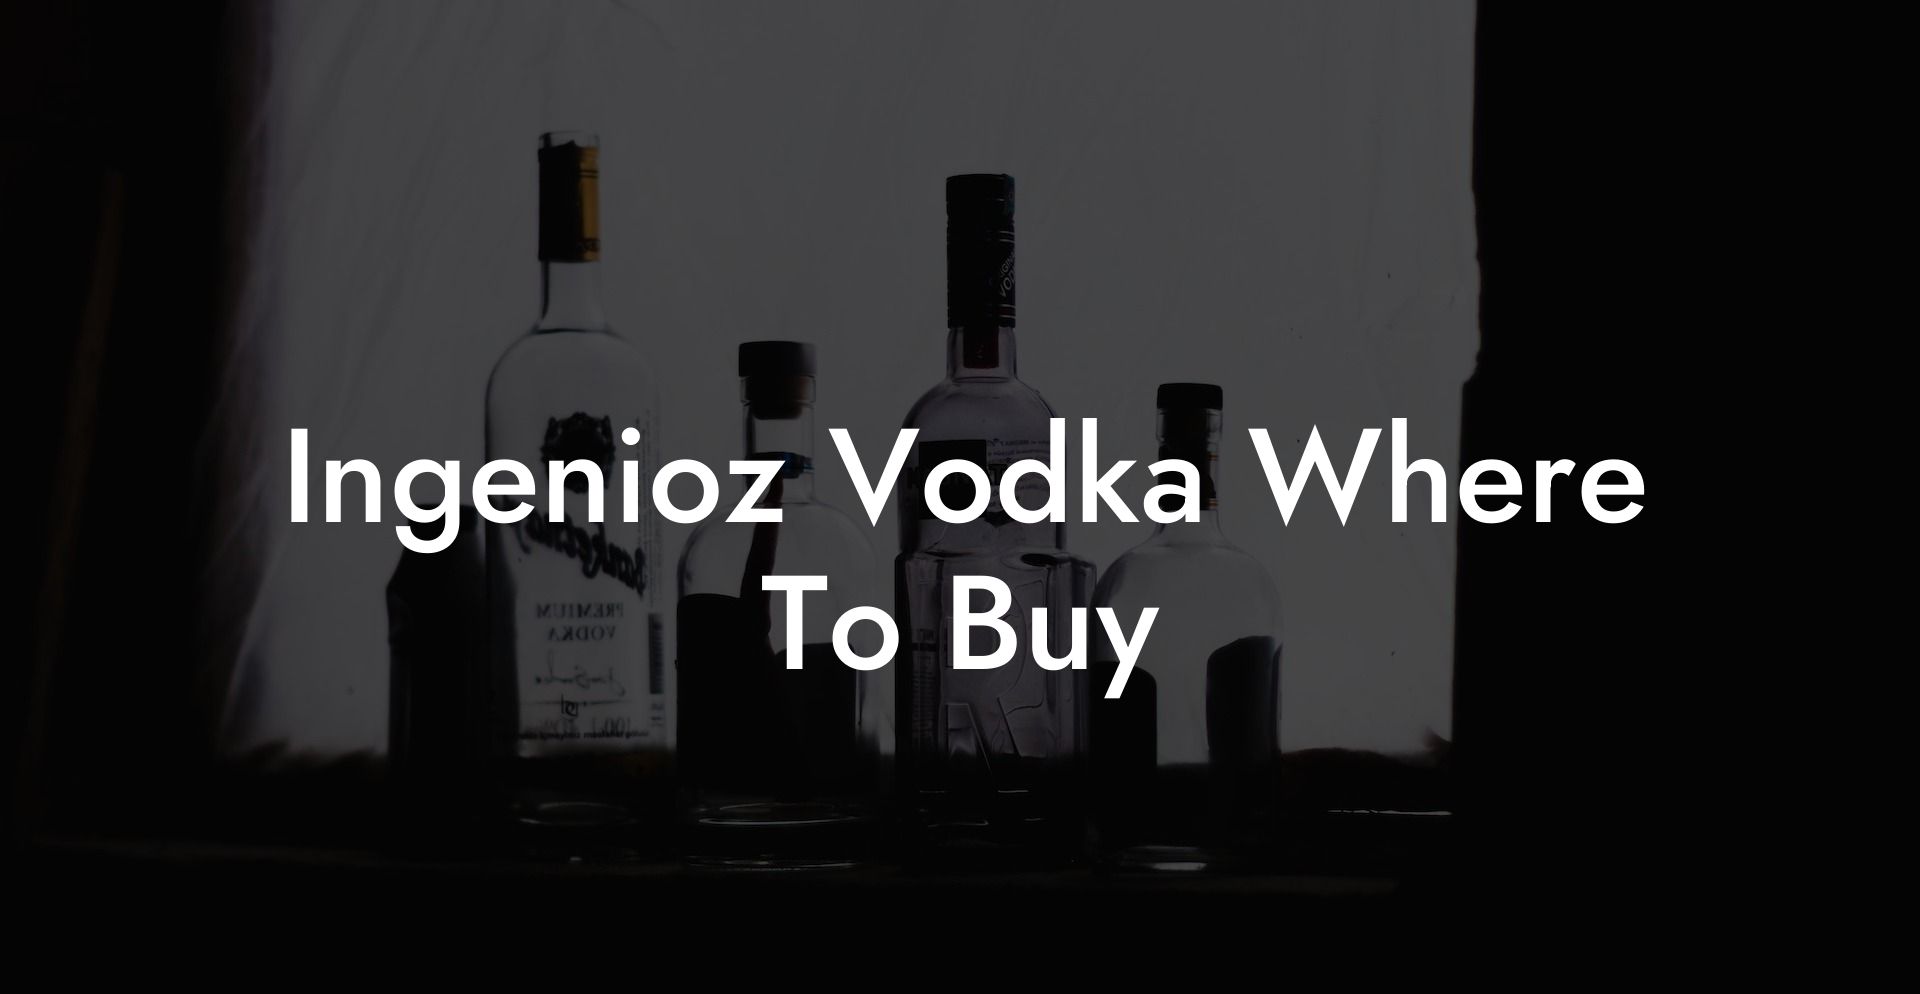 Ingenioz Vodka Where To Buy